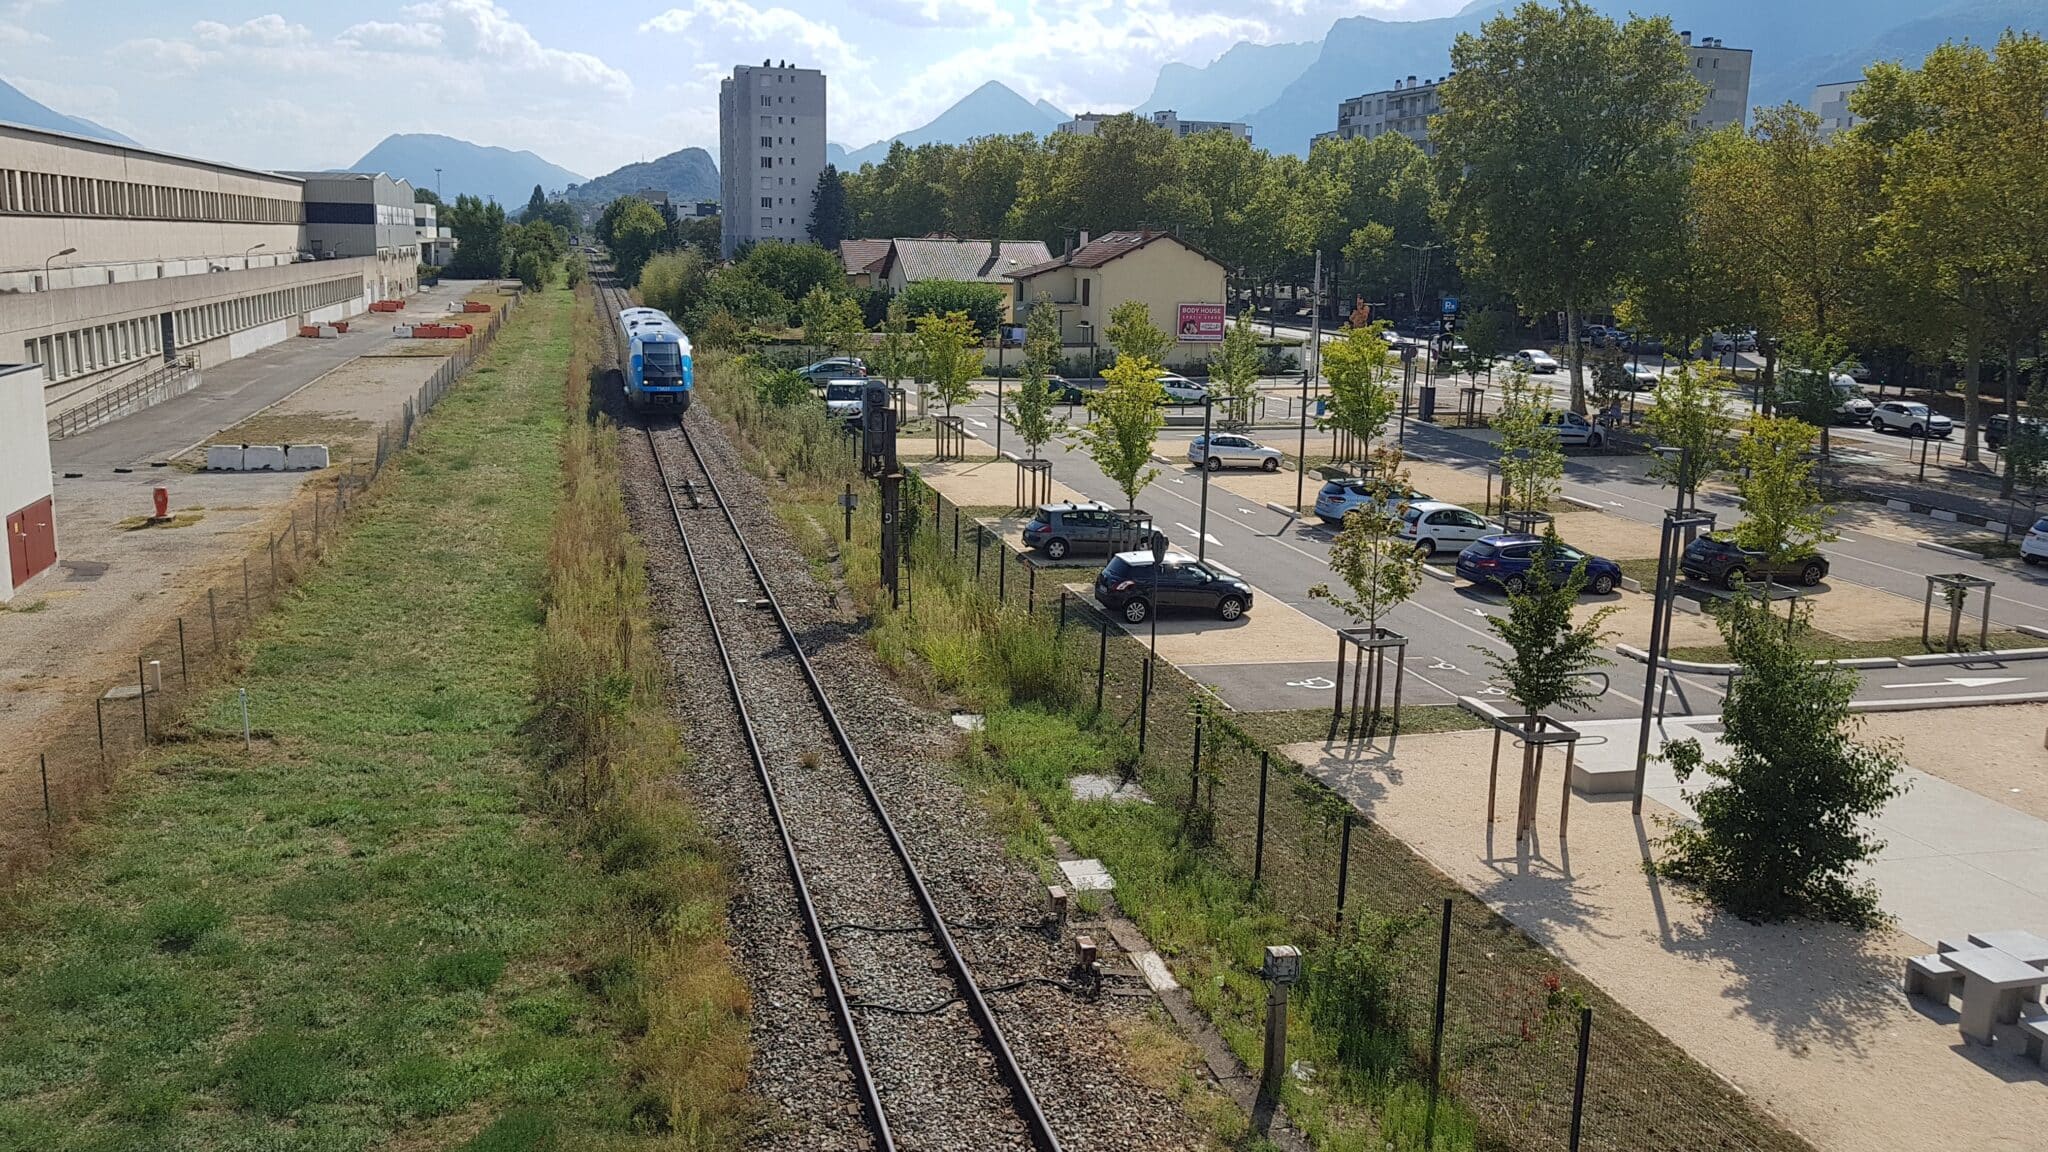 La halte ferroviaire du centre-ville de Pont de Claix déménage au pôle d'échange multimodal Etoile. La ligne sera desservie par le RER métropolitain, crédit Mairie de Pont de Claix